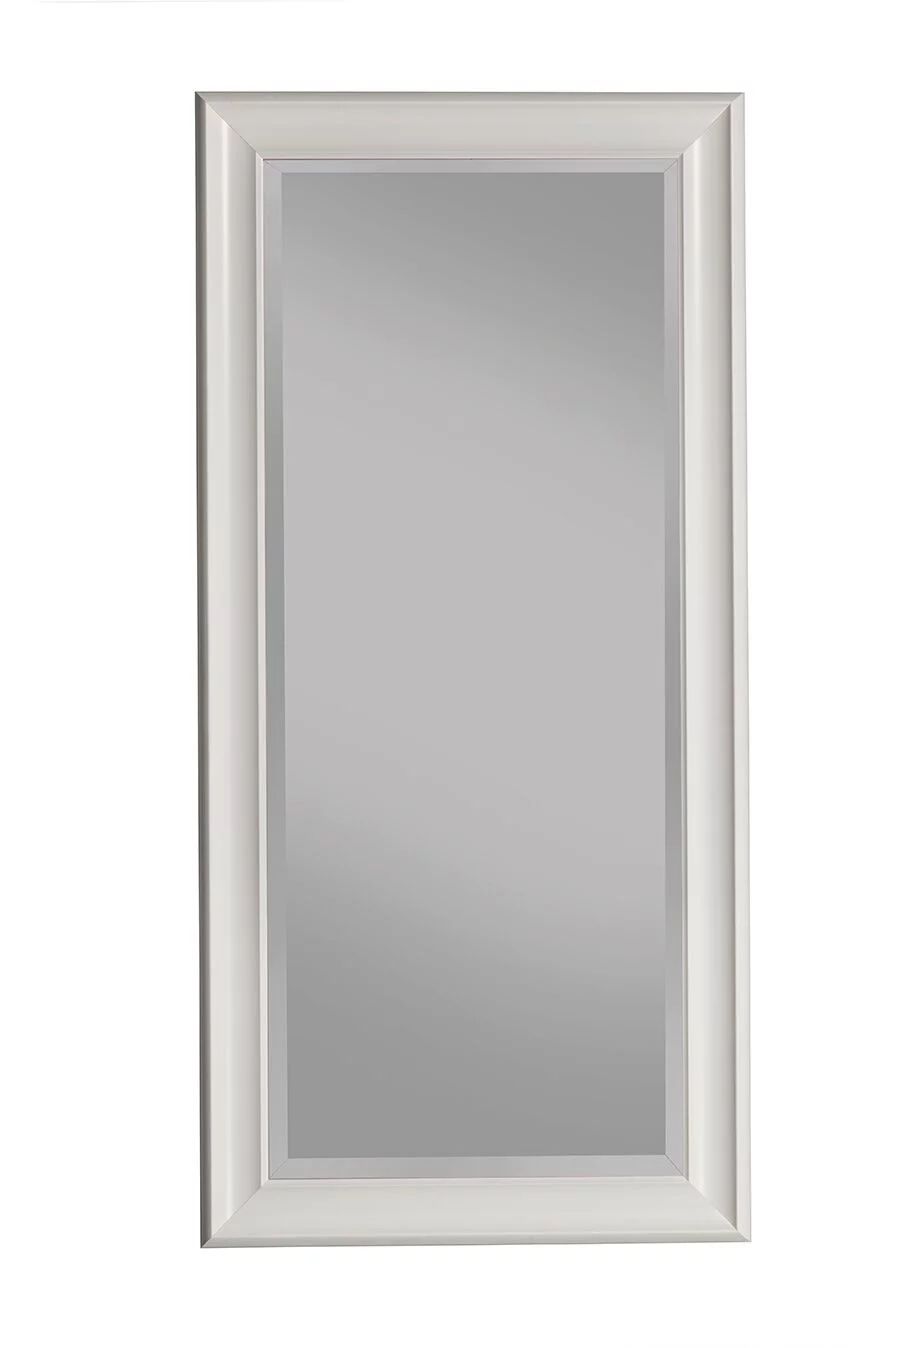 Full Length Leaner Mirror White 65"x31" by Martin Svensson Home - Walmart.com | Walmart (US)